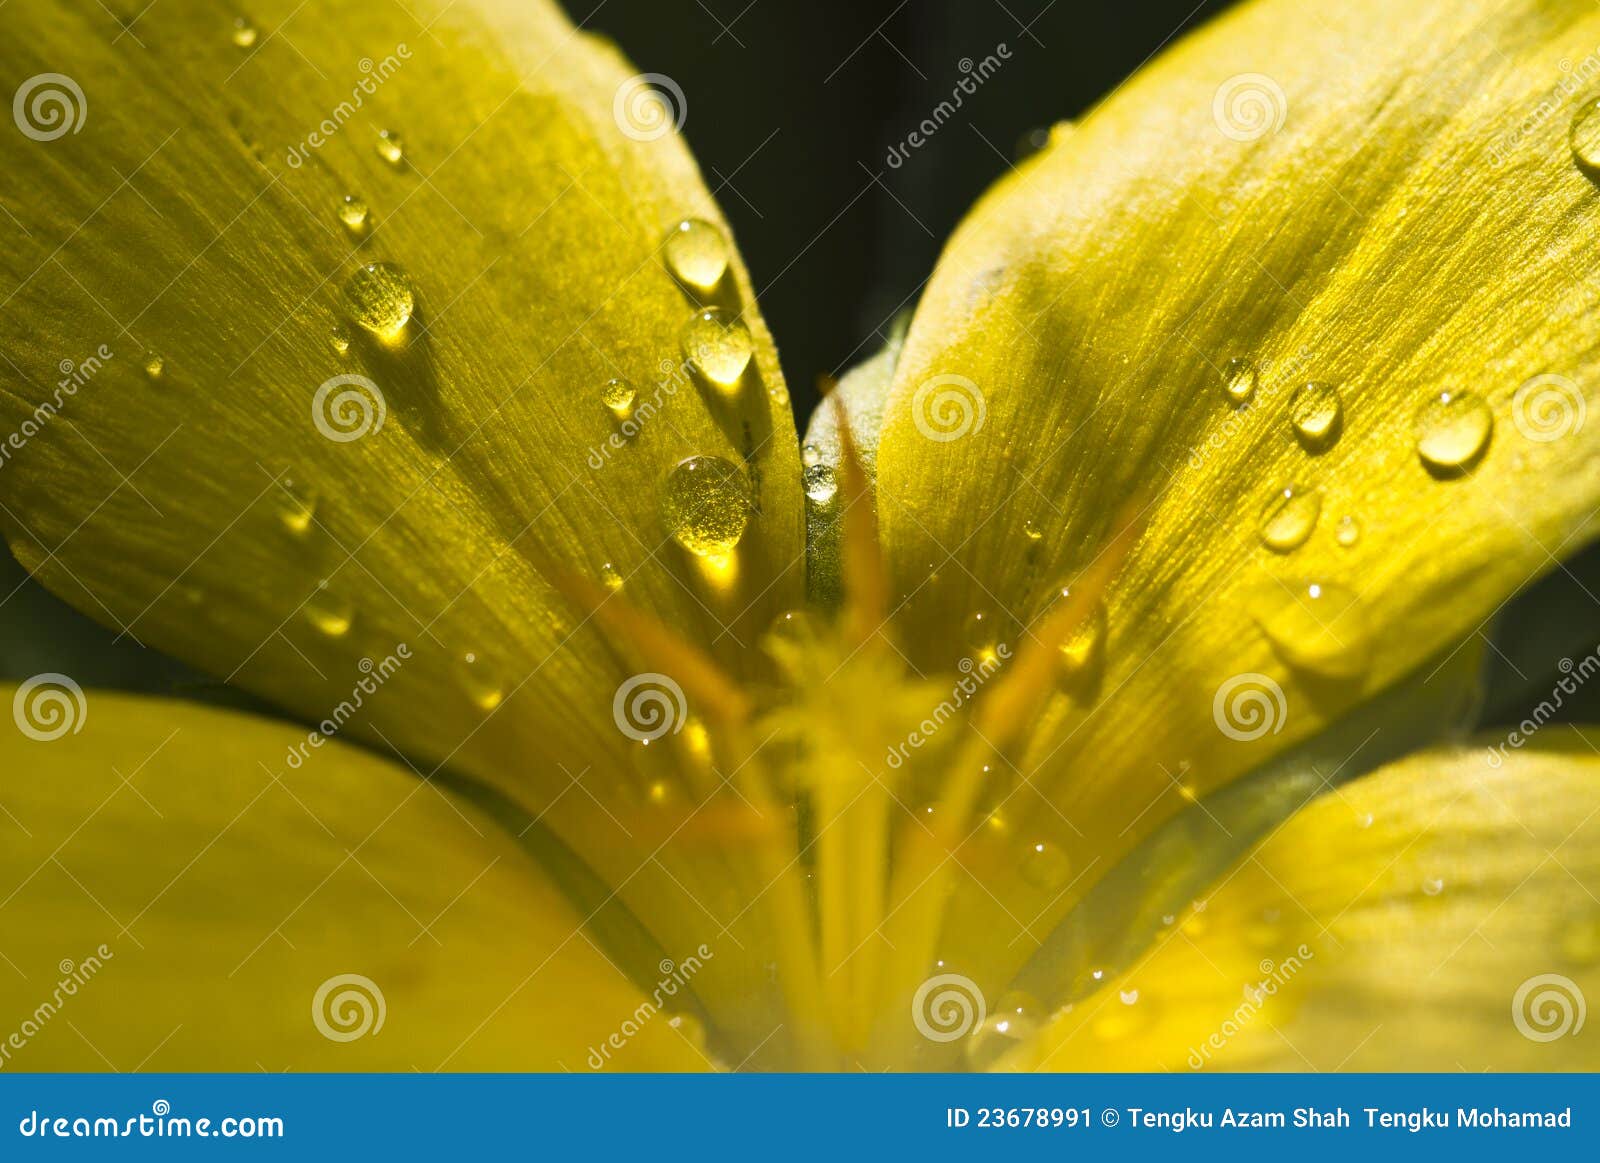 Gotas nas pétalas da flor. Feche acima da ideia de gotas de água nas pétalas de uma flor do amarelo com raia do sol e fundo escuro